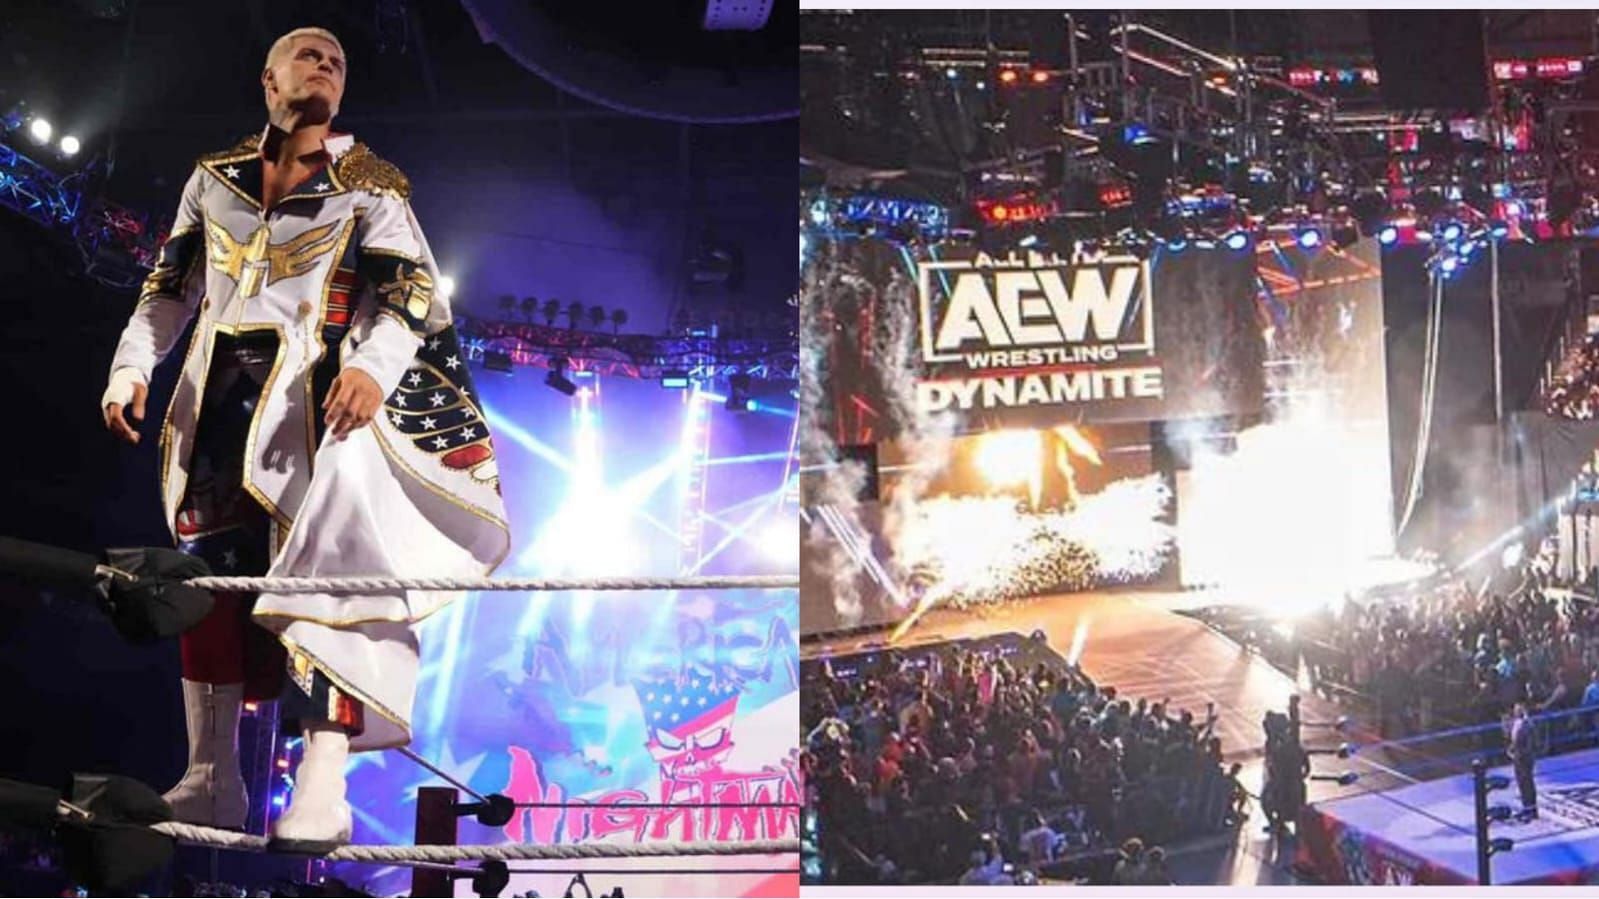 Cody Rhodes is a former AEW star